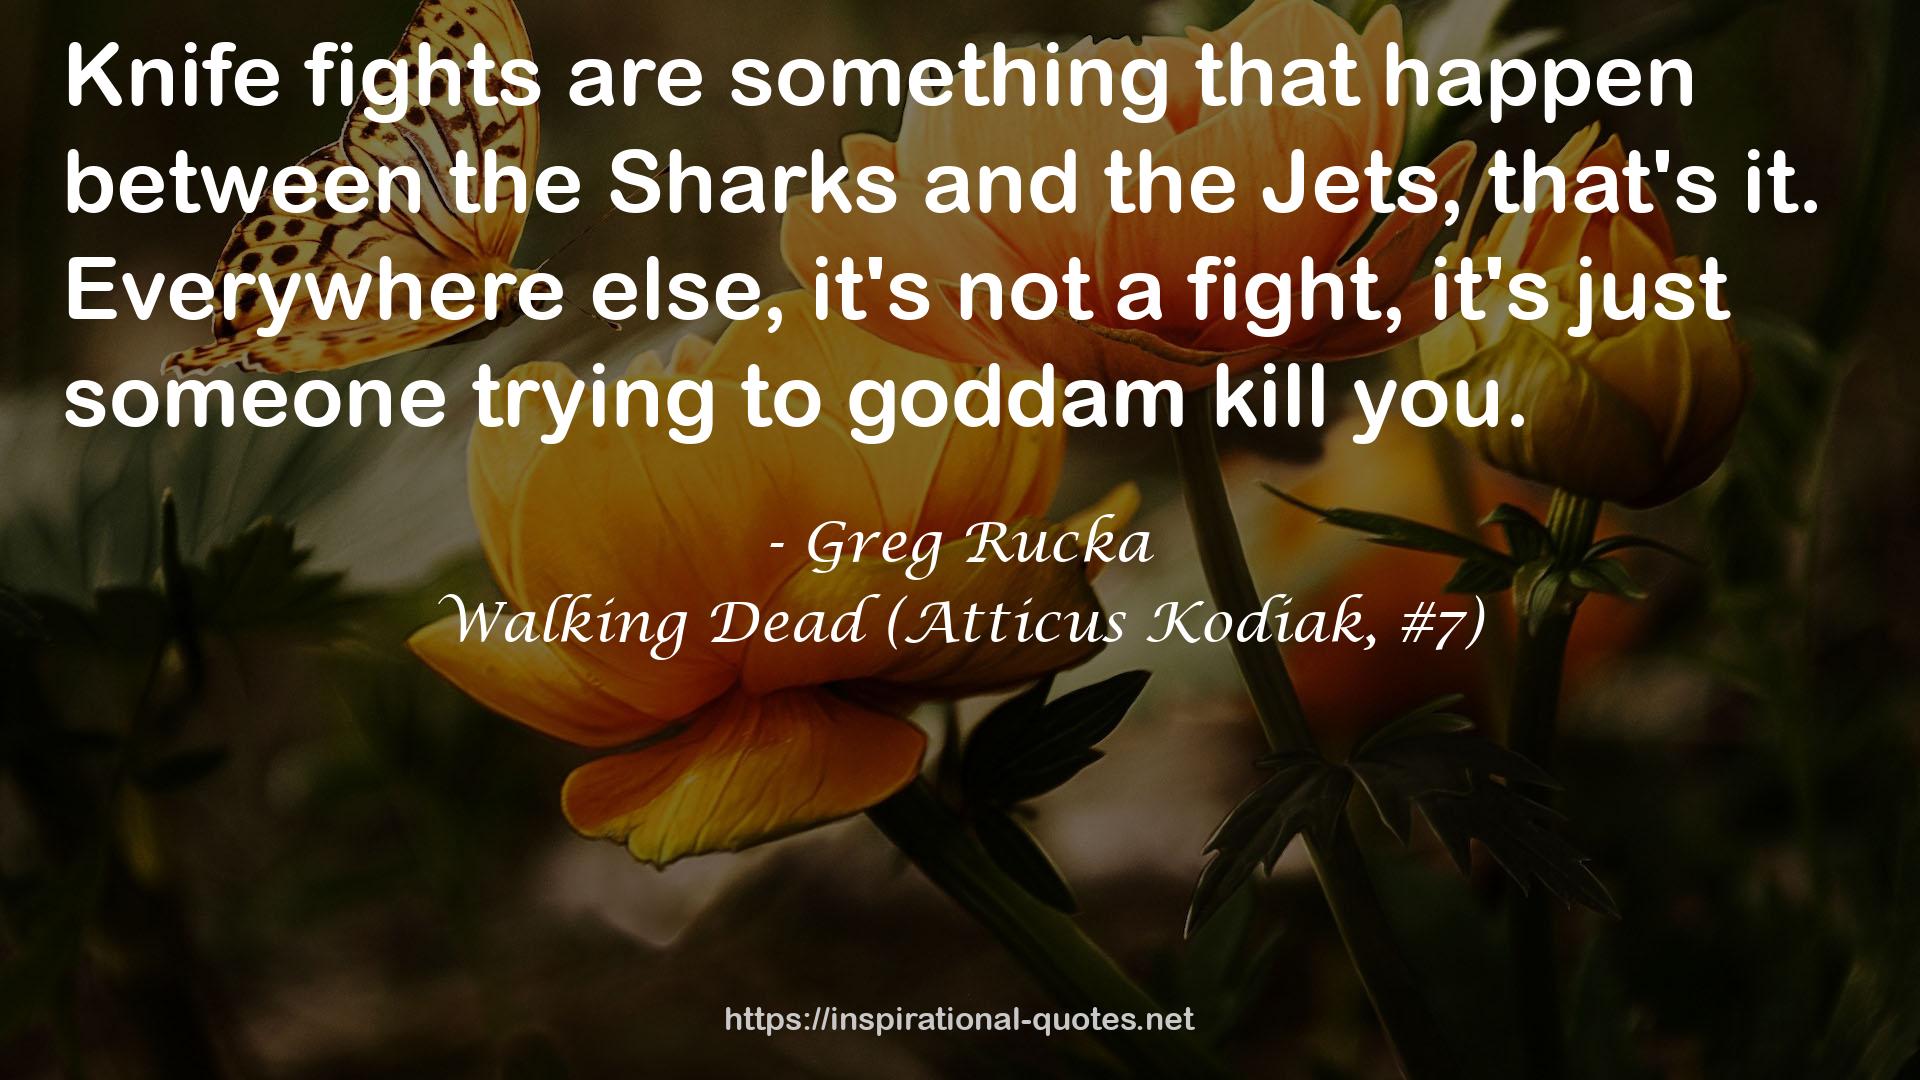 Walking Dead (Atticus Kodiak, #7) QUOTES